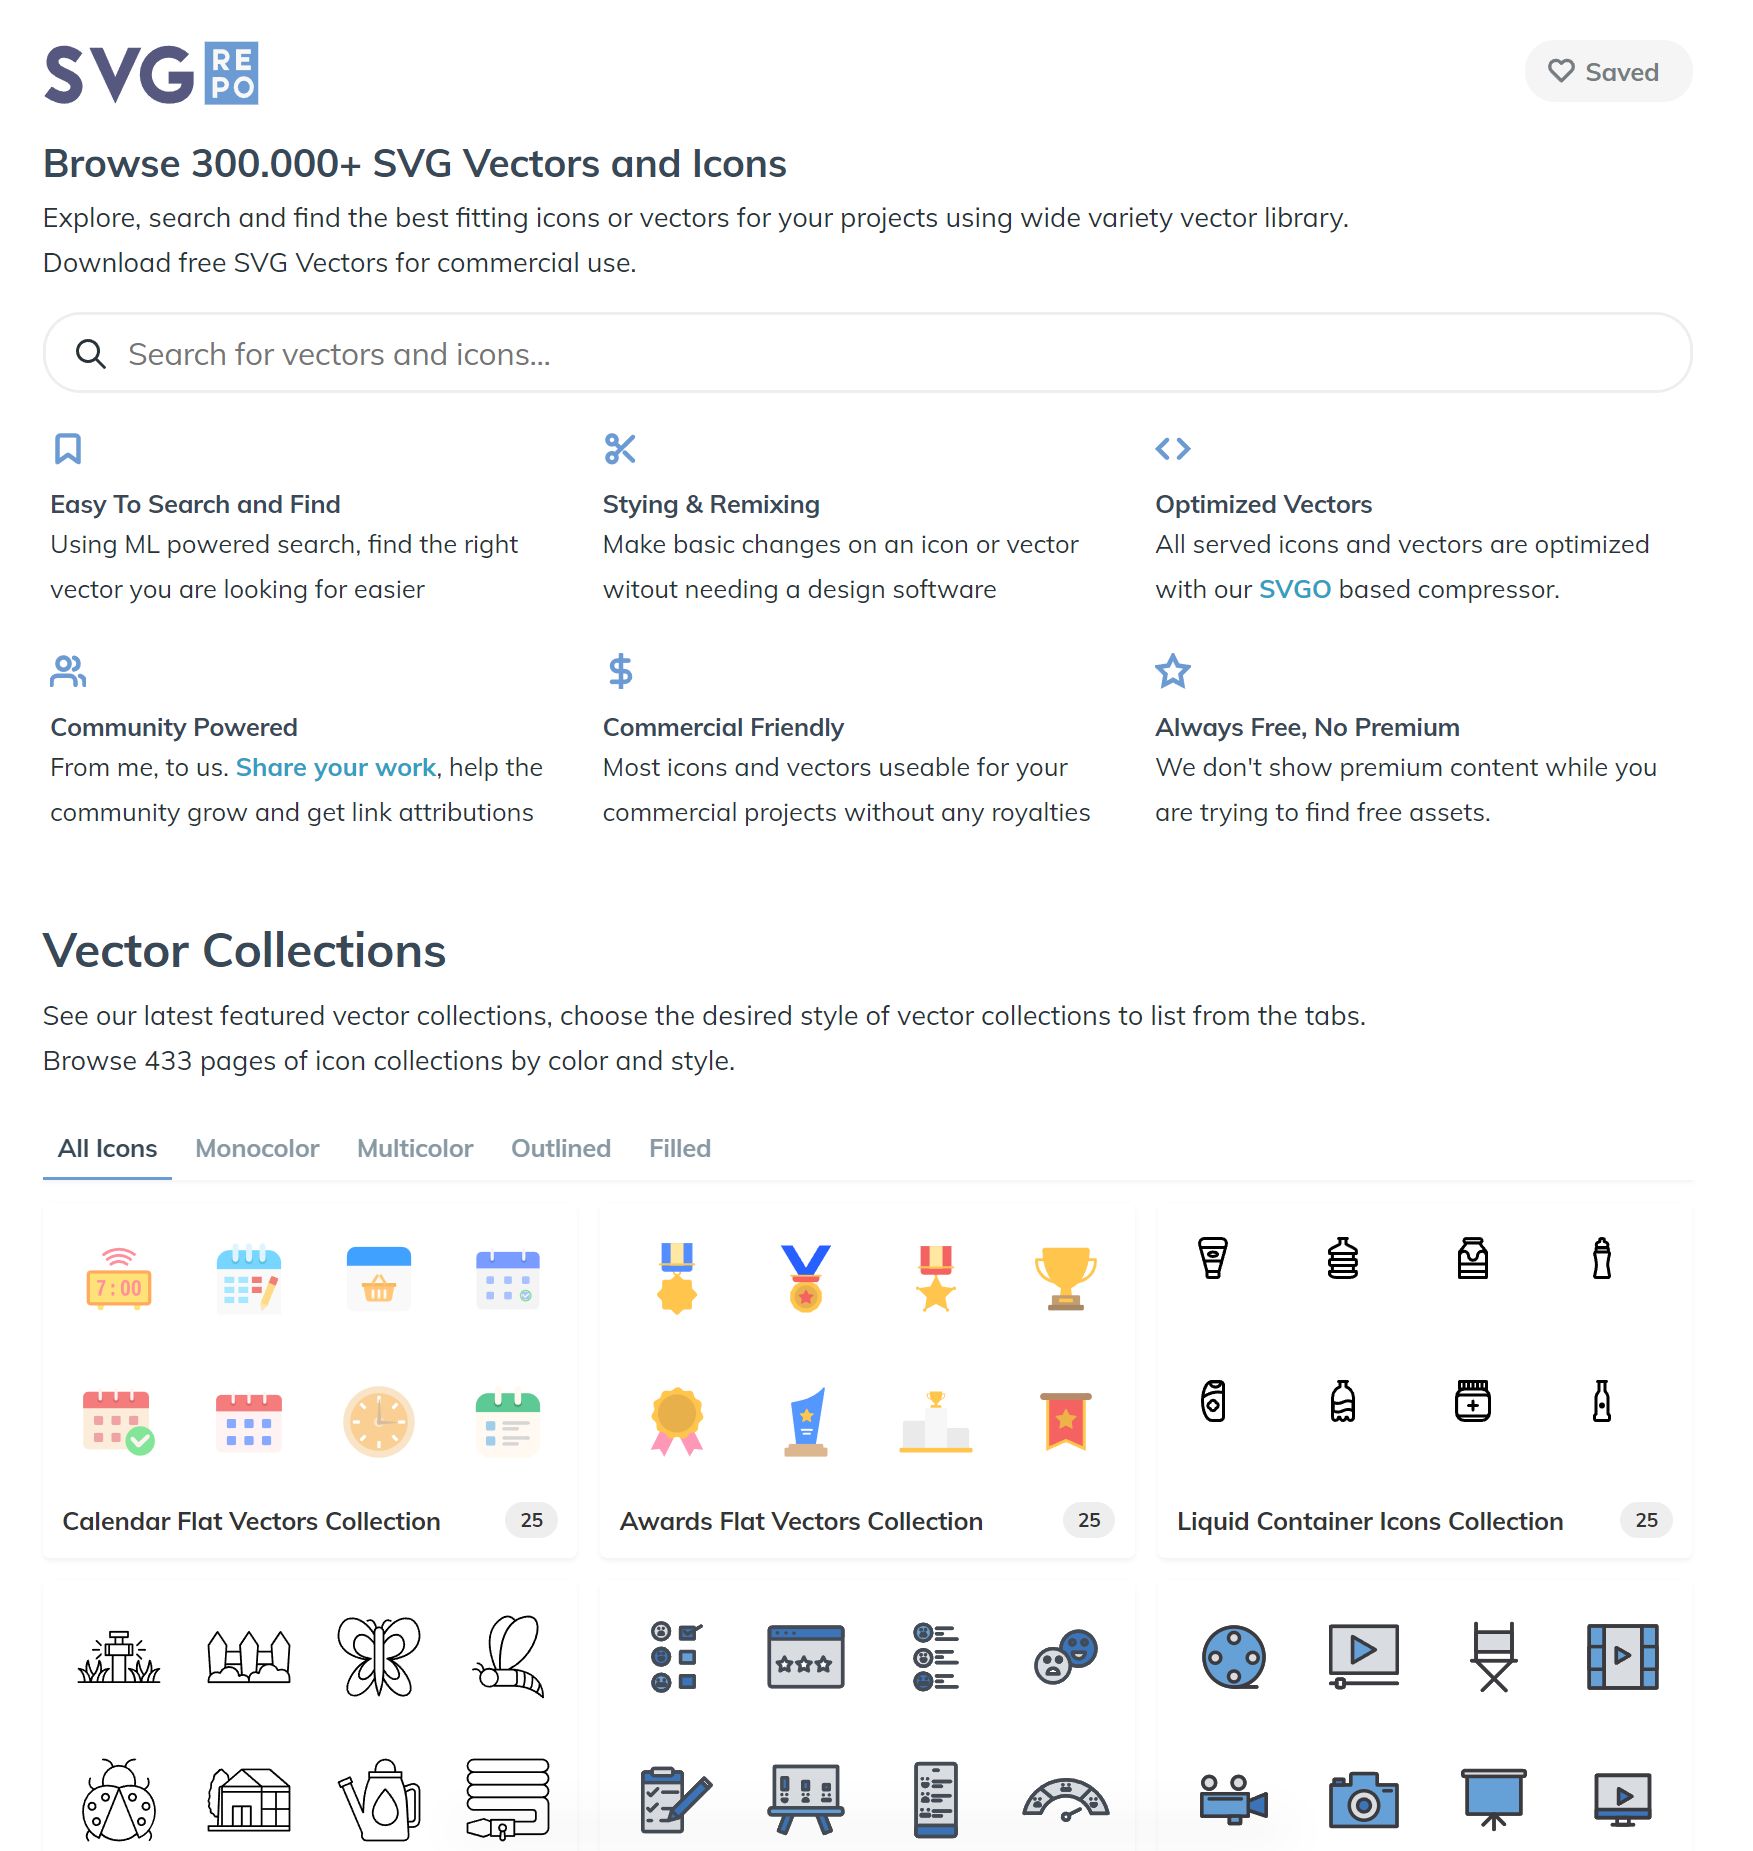 Avatar Vector SVG Icon (88) - SVG Repo